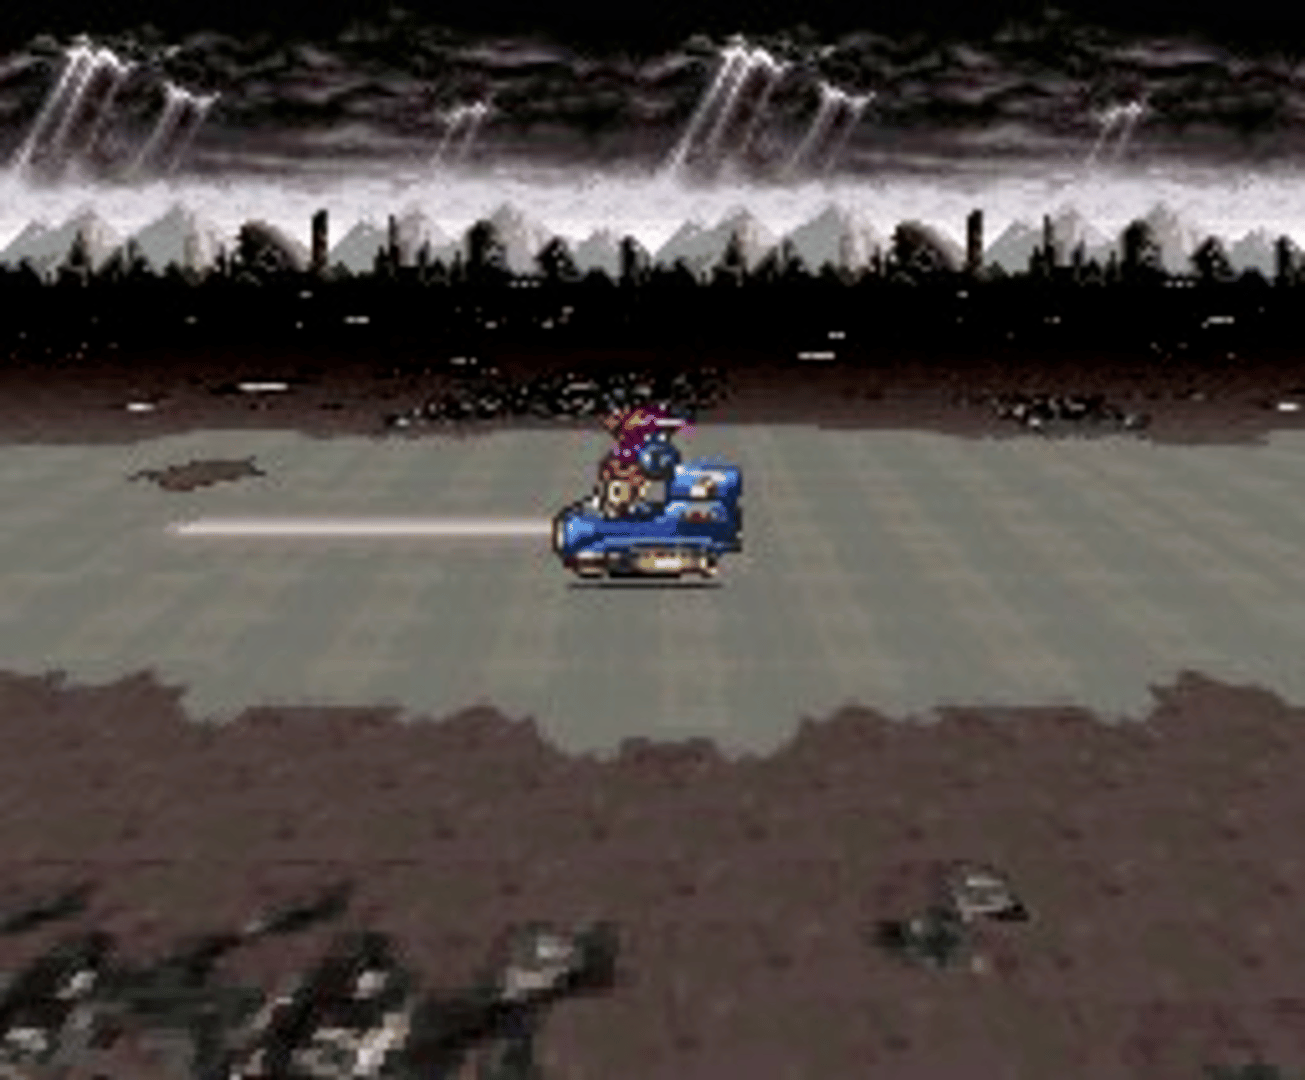 Chrono Trigger screenshot